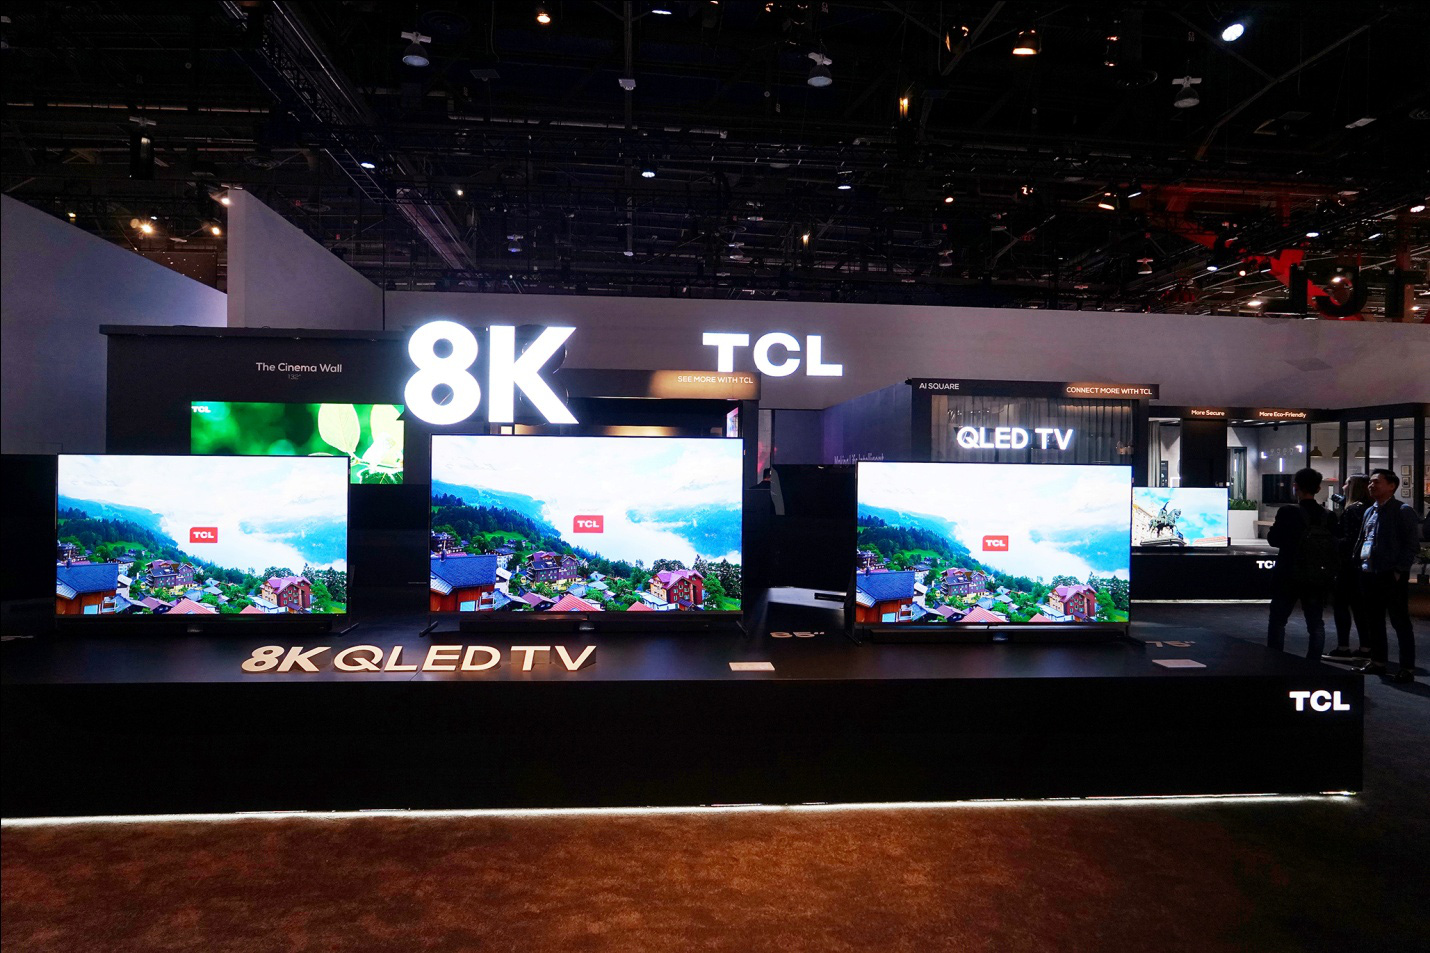 Dòng sản phẩm cao cấp của TCL giành được Giải Thưởng Vàng TV 8K QLED tại CES 2020 - Ảnh 3.